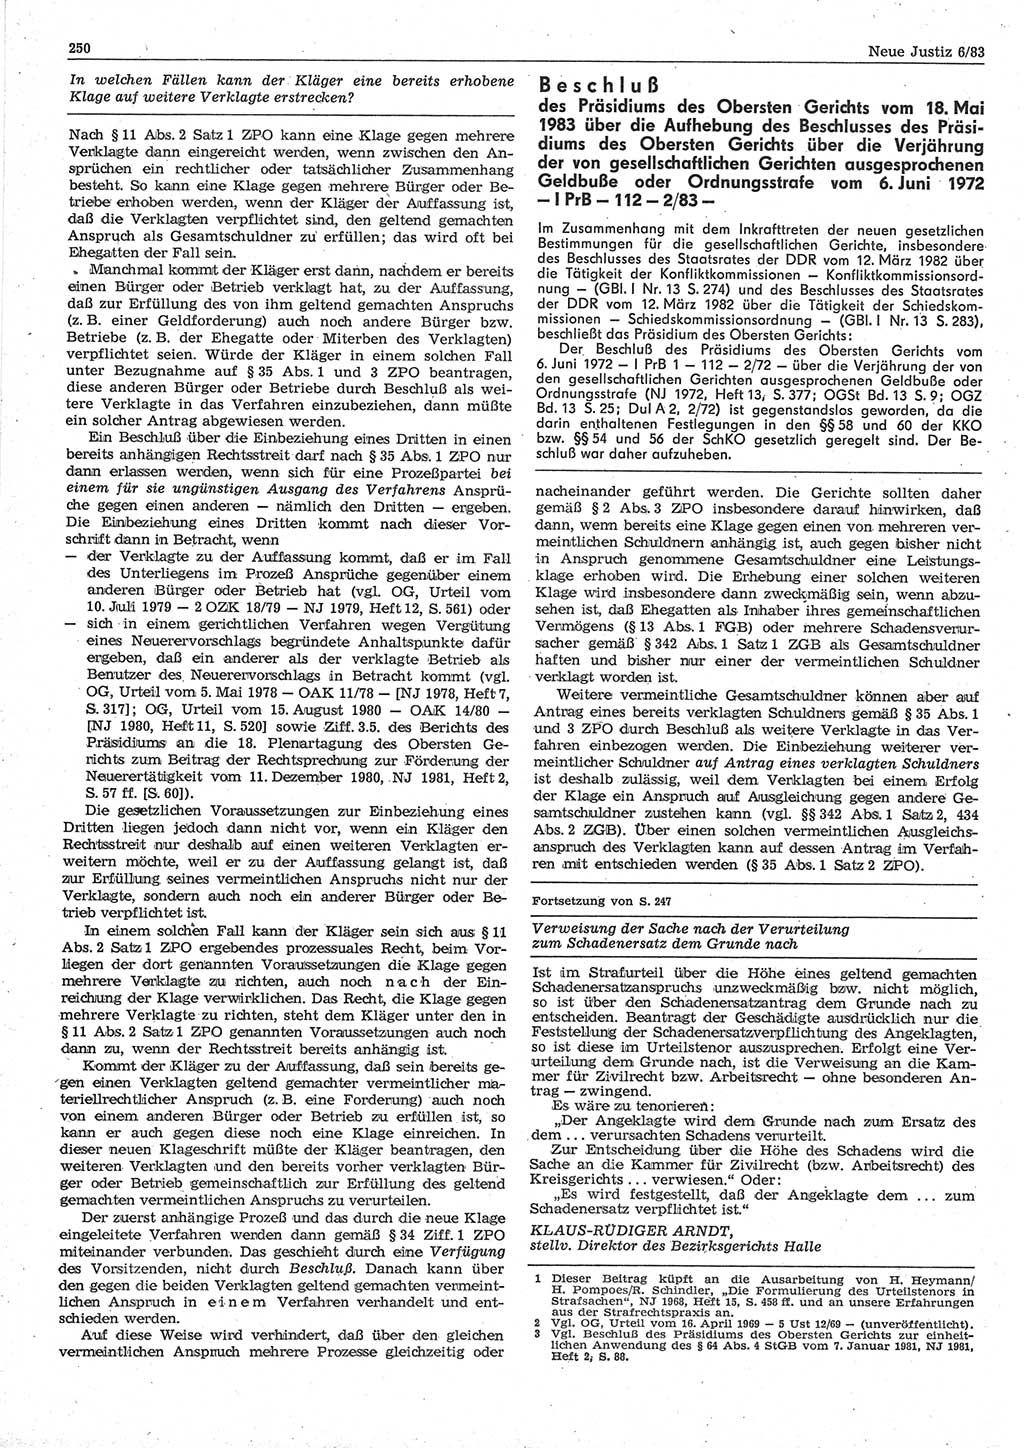 Neue Justiz (NJ), Zeitschrift für sozialistisches Recht und Gesetzlichkeit [Deutsche Demokratische Republik (DDR)], 37. Jahrgang 1983, Seite 250 (NJ DDR 1983, S. 250)